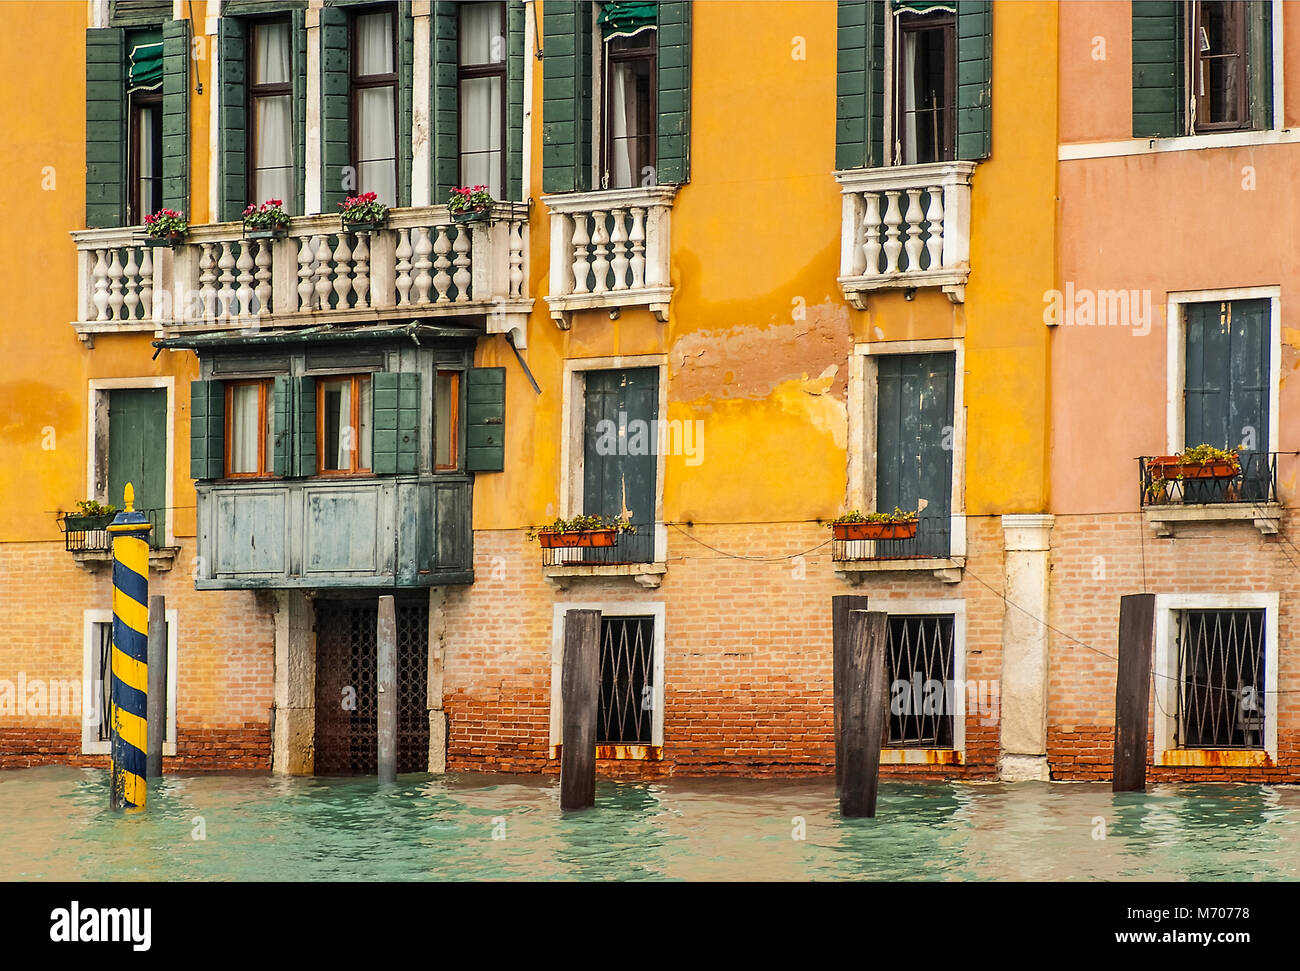 Acqua Alta en Venecia, Italia Foto de stock